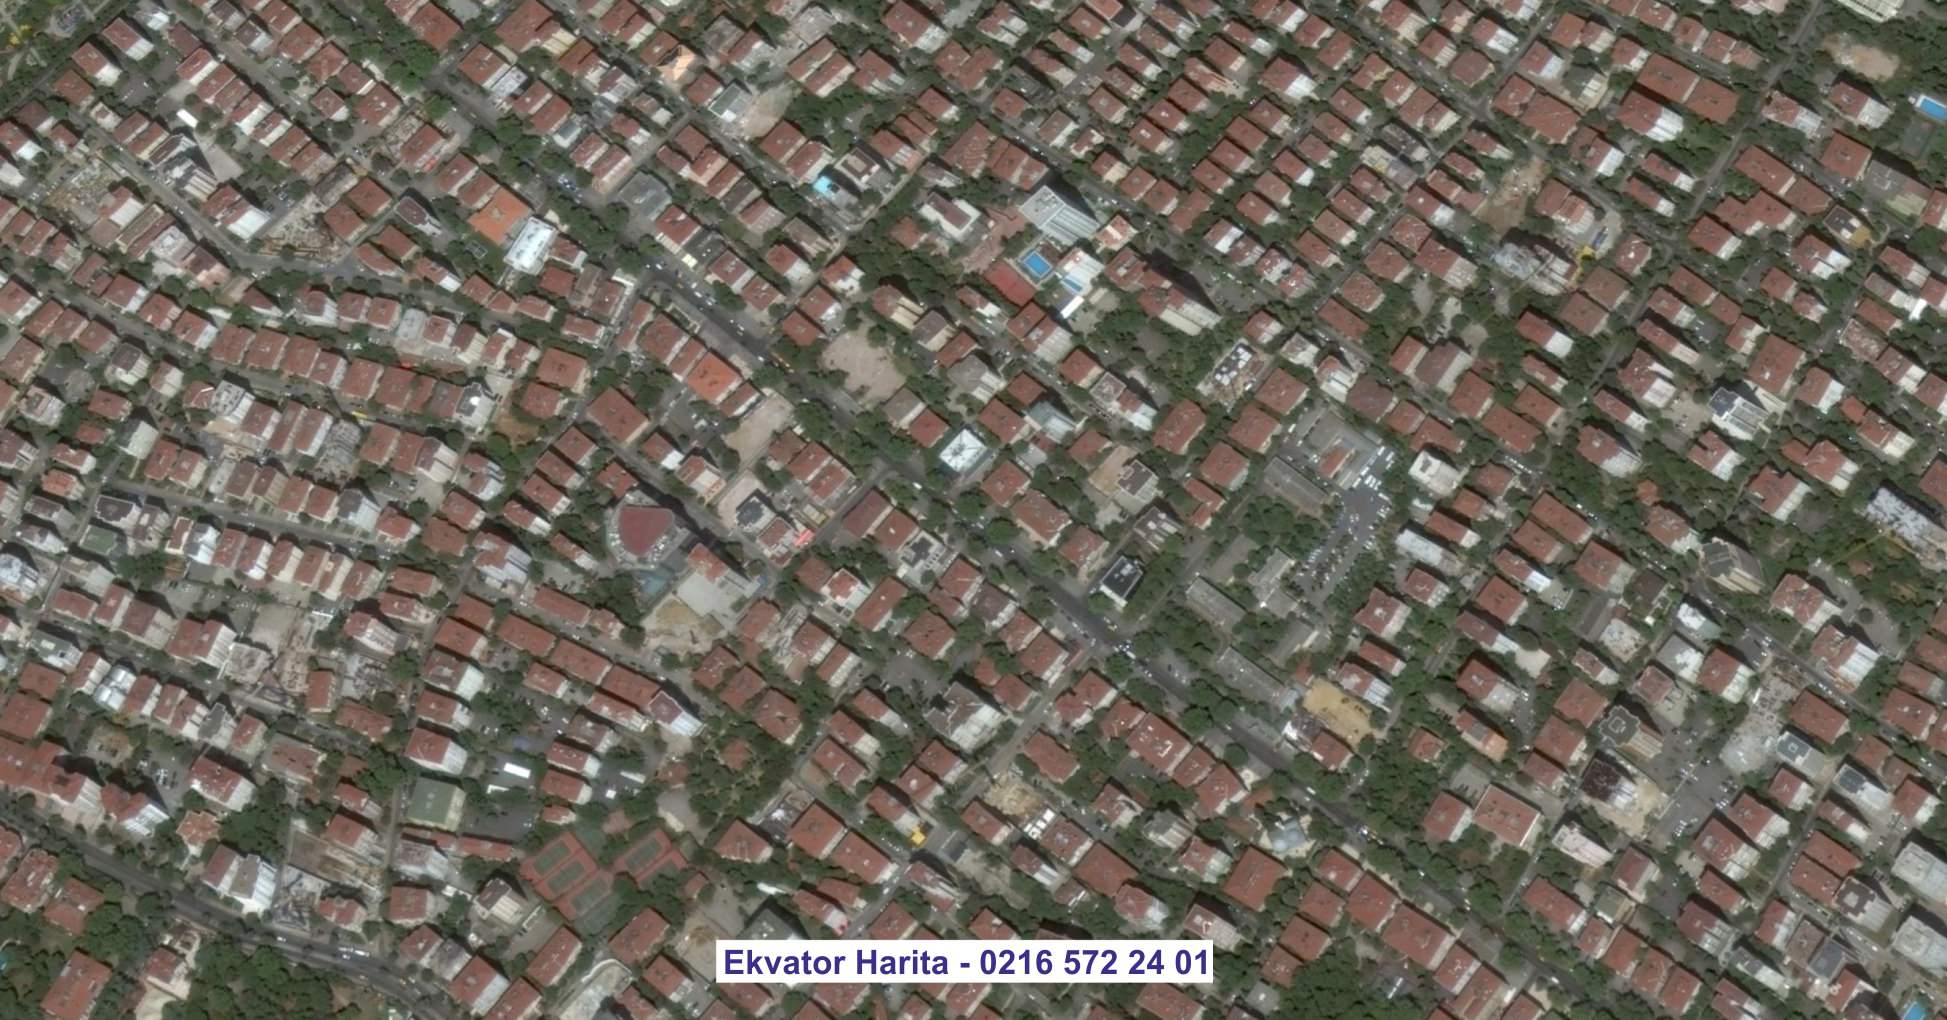 Batıkent Uydu Görüntüsü Örnek Fotoğrafı